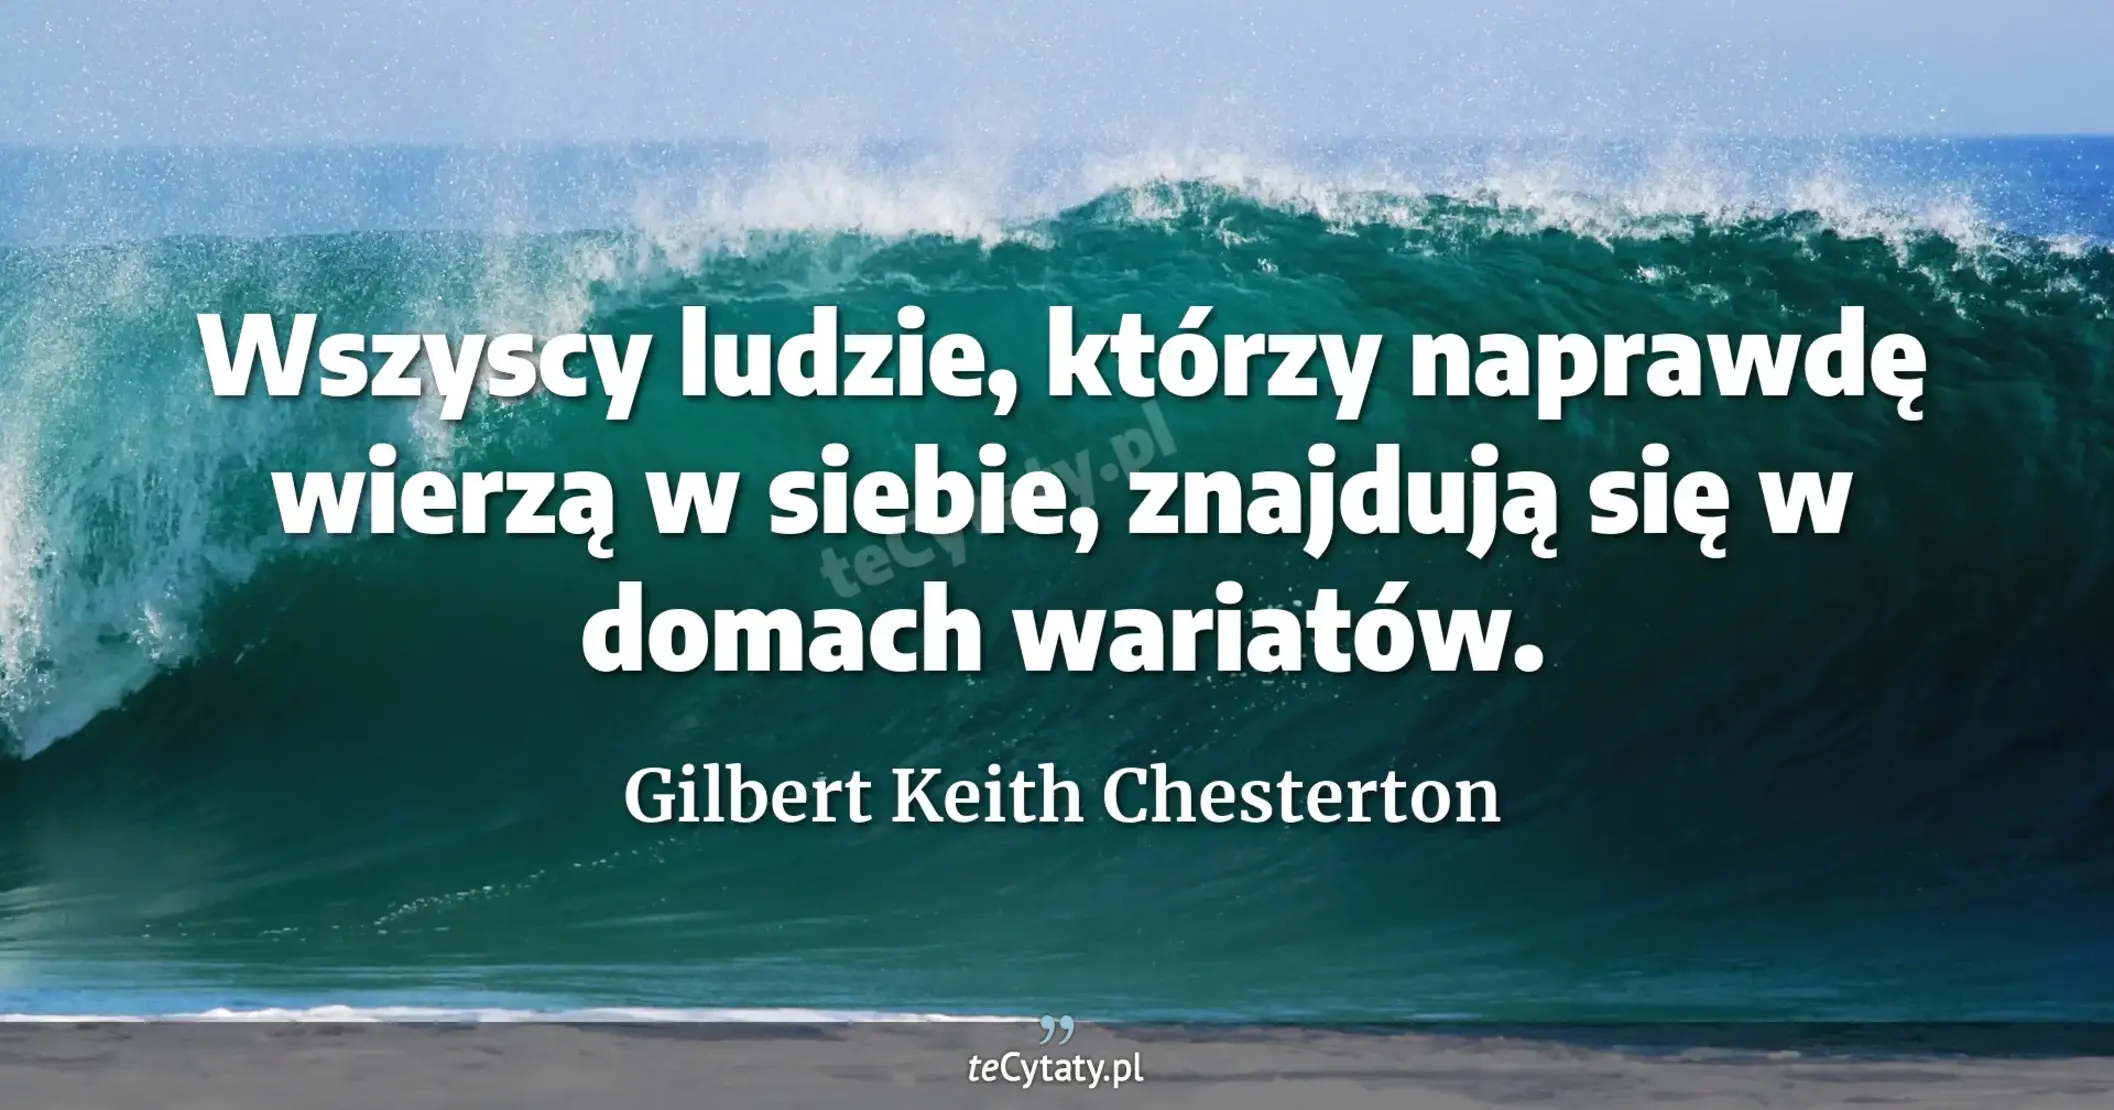 Wszyscy ludzie, którzy naprawdę wierzą w siebie, znajdują się w domach wariatów. - Gilbert Keith Chesterton